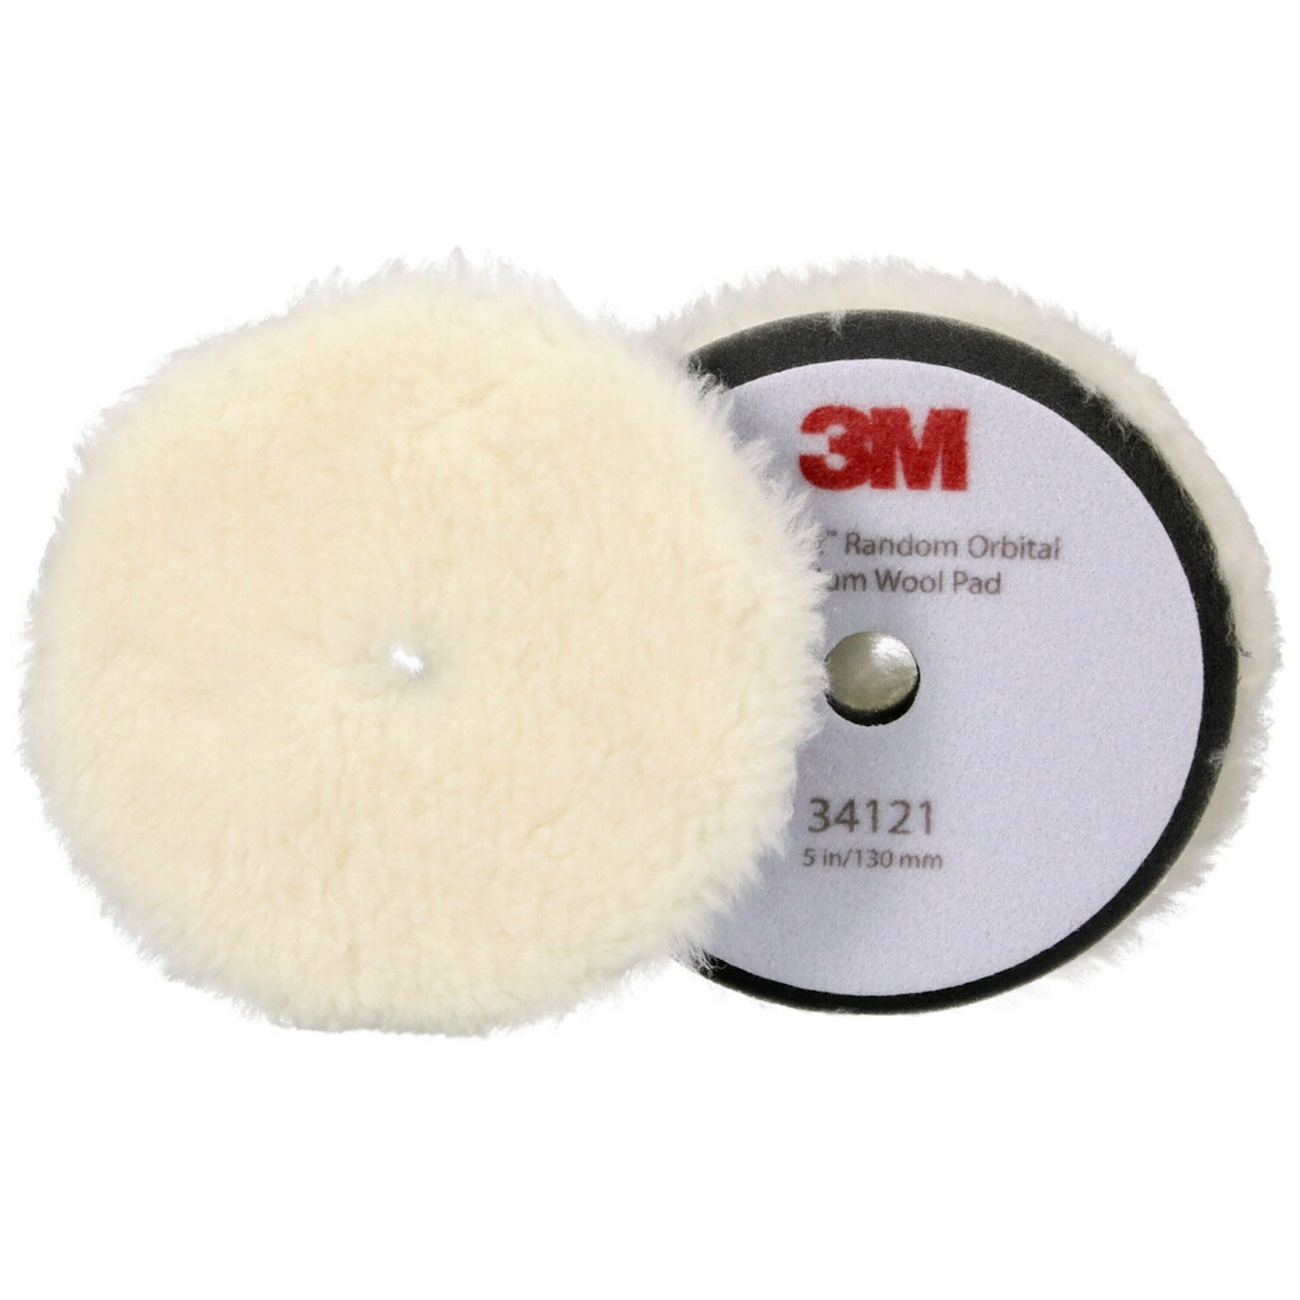 3M Perfect-it Polierpad mit Polierfell für Exzenterpoliermaschine, medium, weiß, 130 mm, 34121 (Pack = 2 Stück)